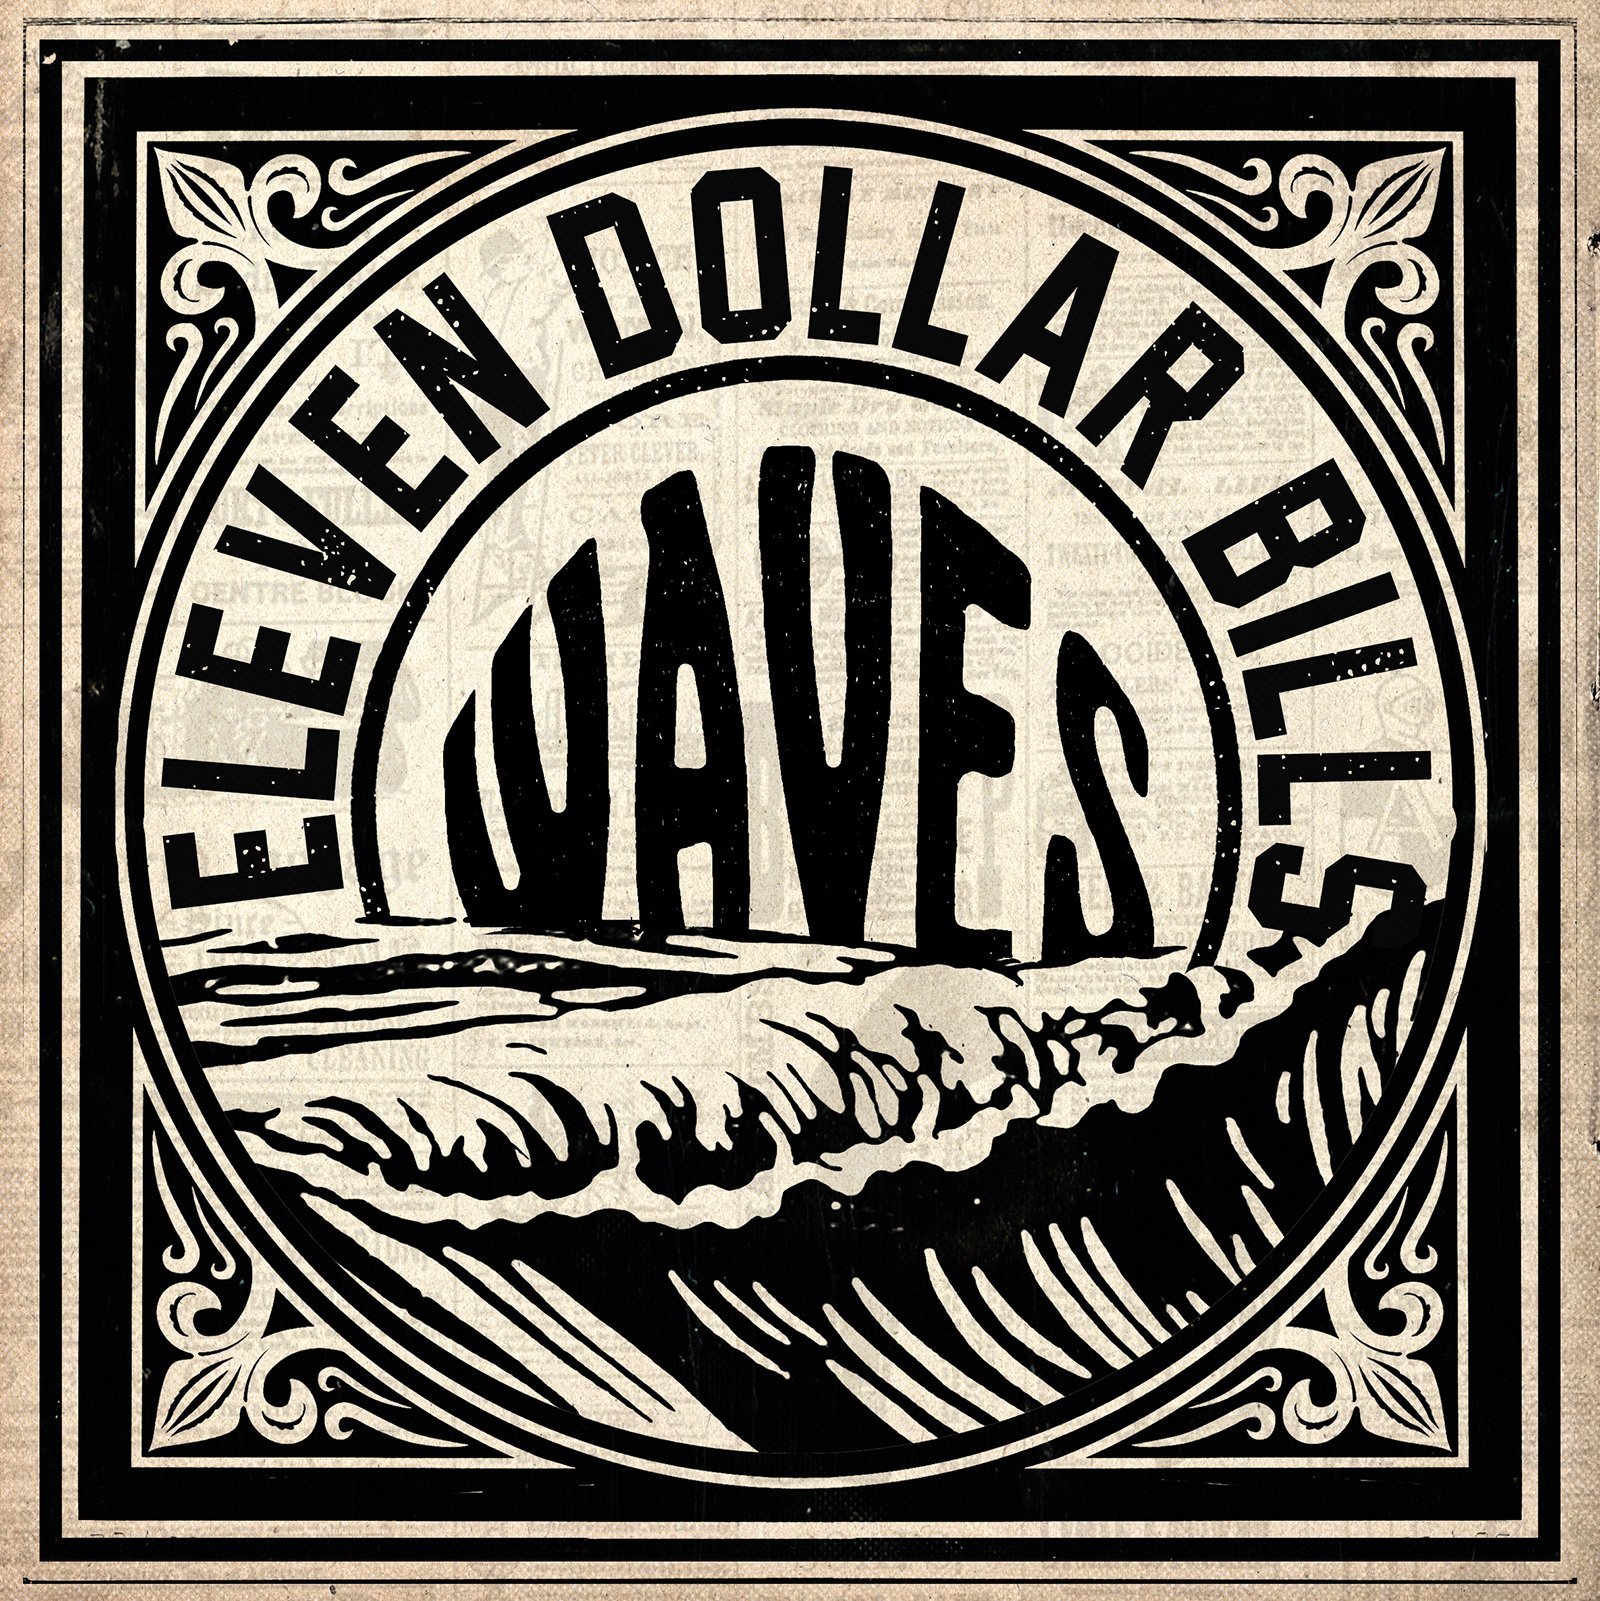  Eleven Dollar Bills – “Waves”